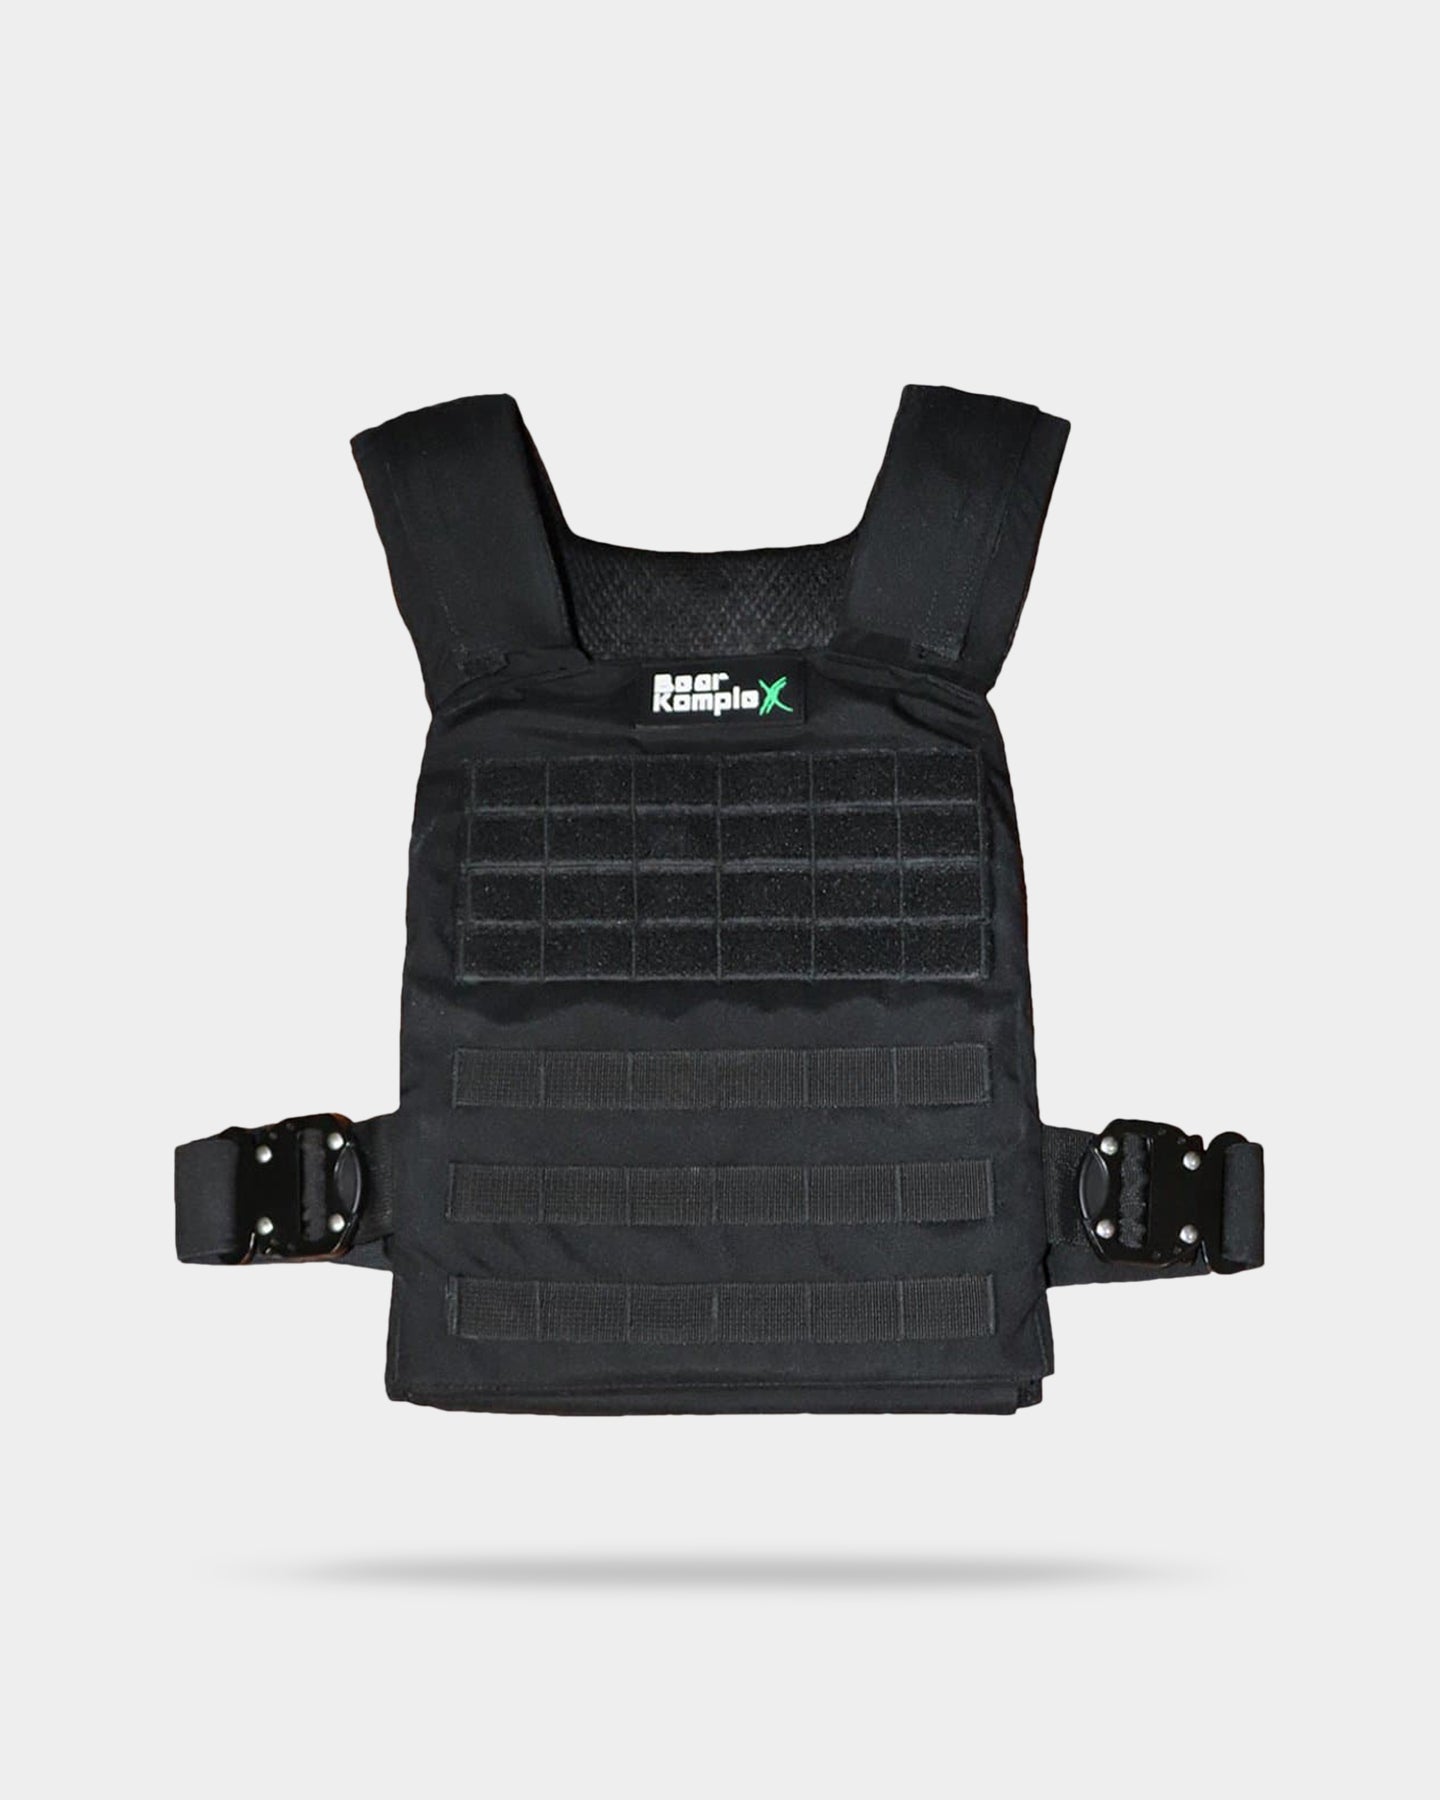 SKU6130128-Black-vest-front-8-16